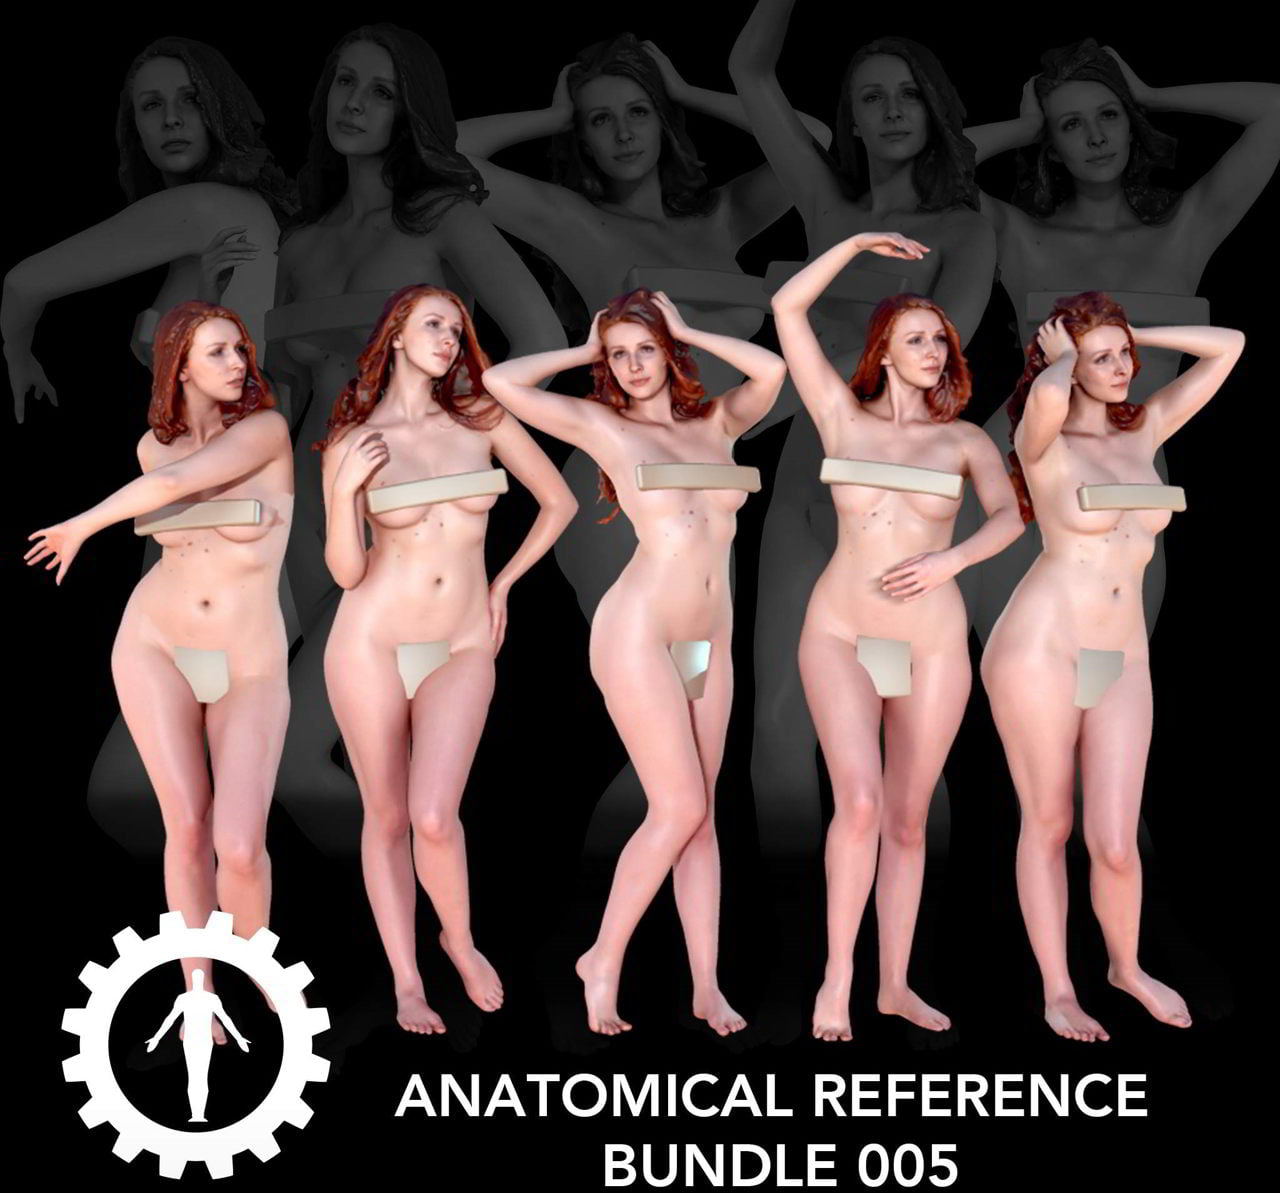 Anatomical Reference Bundle 005 free download